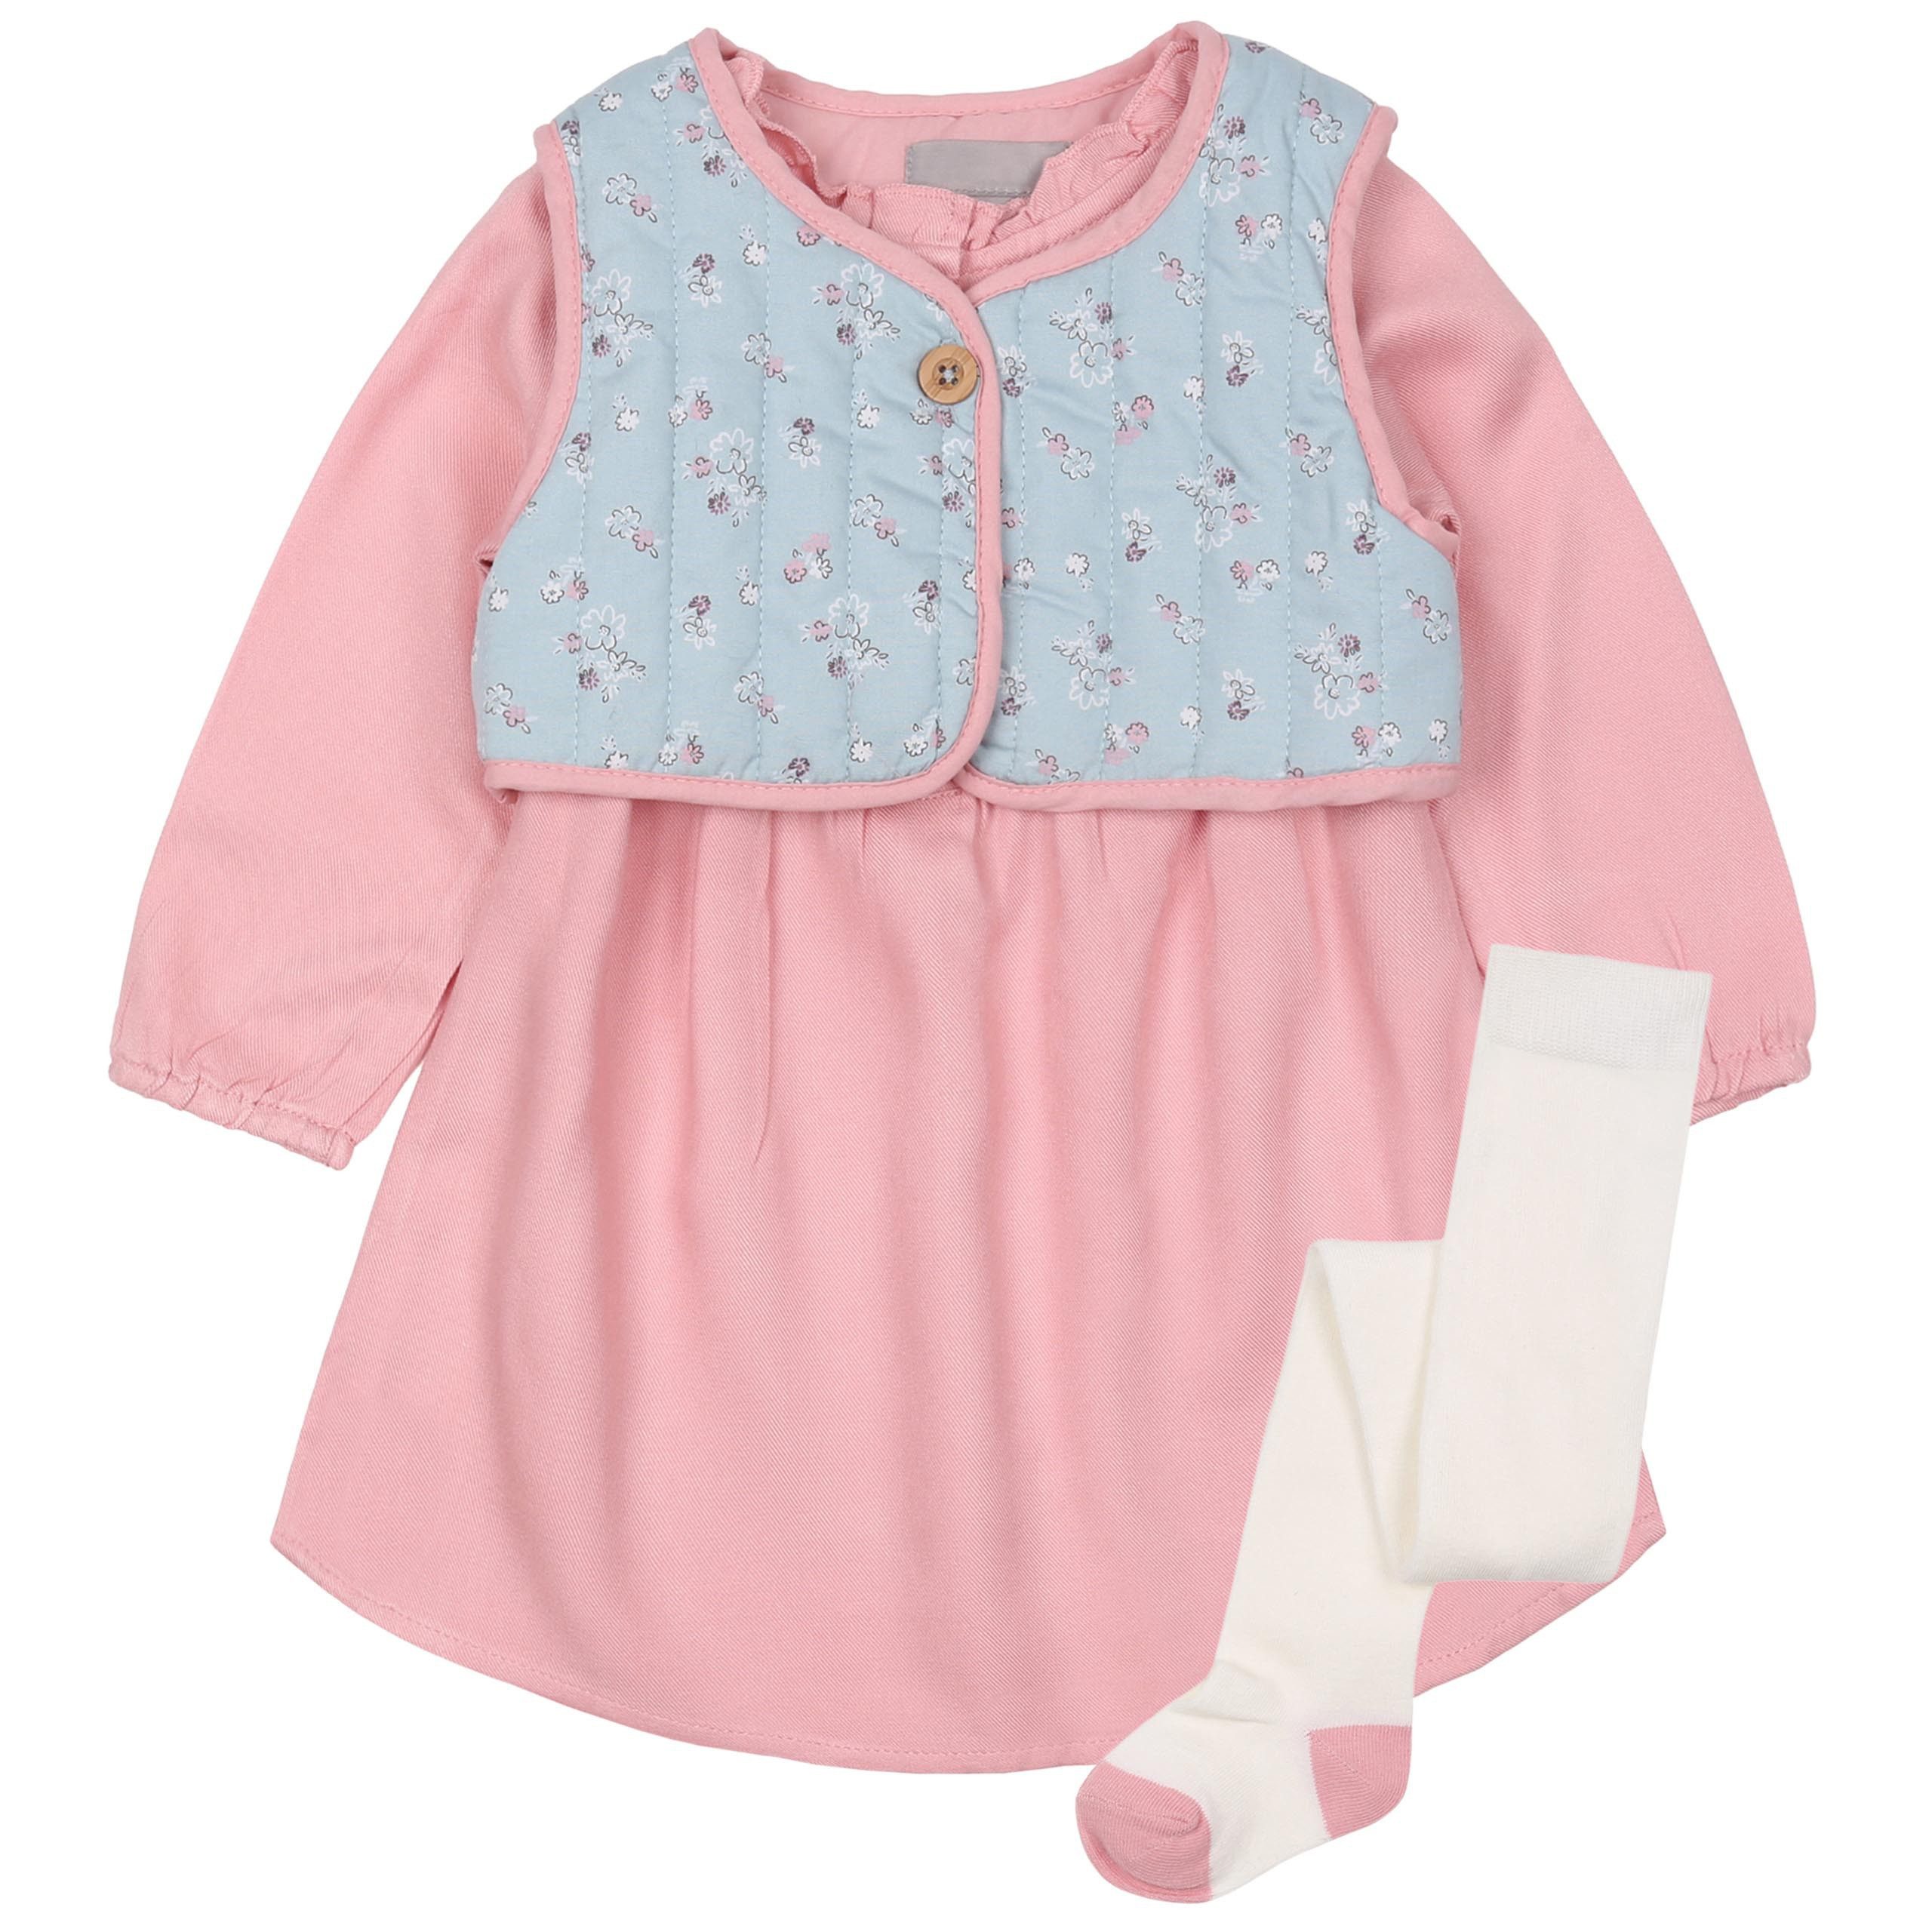 Sarcia.eu Frühchenpaket Mädchen Baby-Set bestehend aus Kleid, Weste, Strumpfhose 18-24 Monate